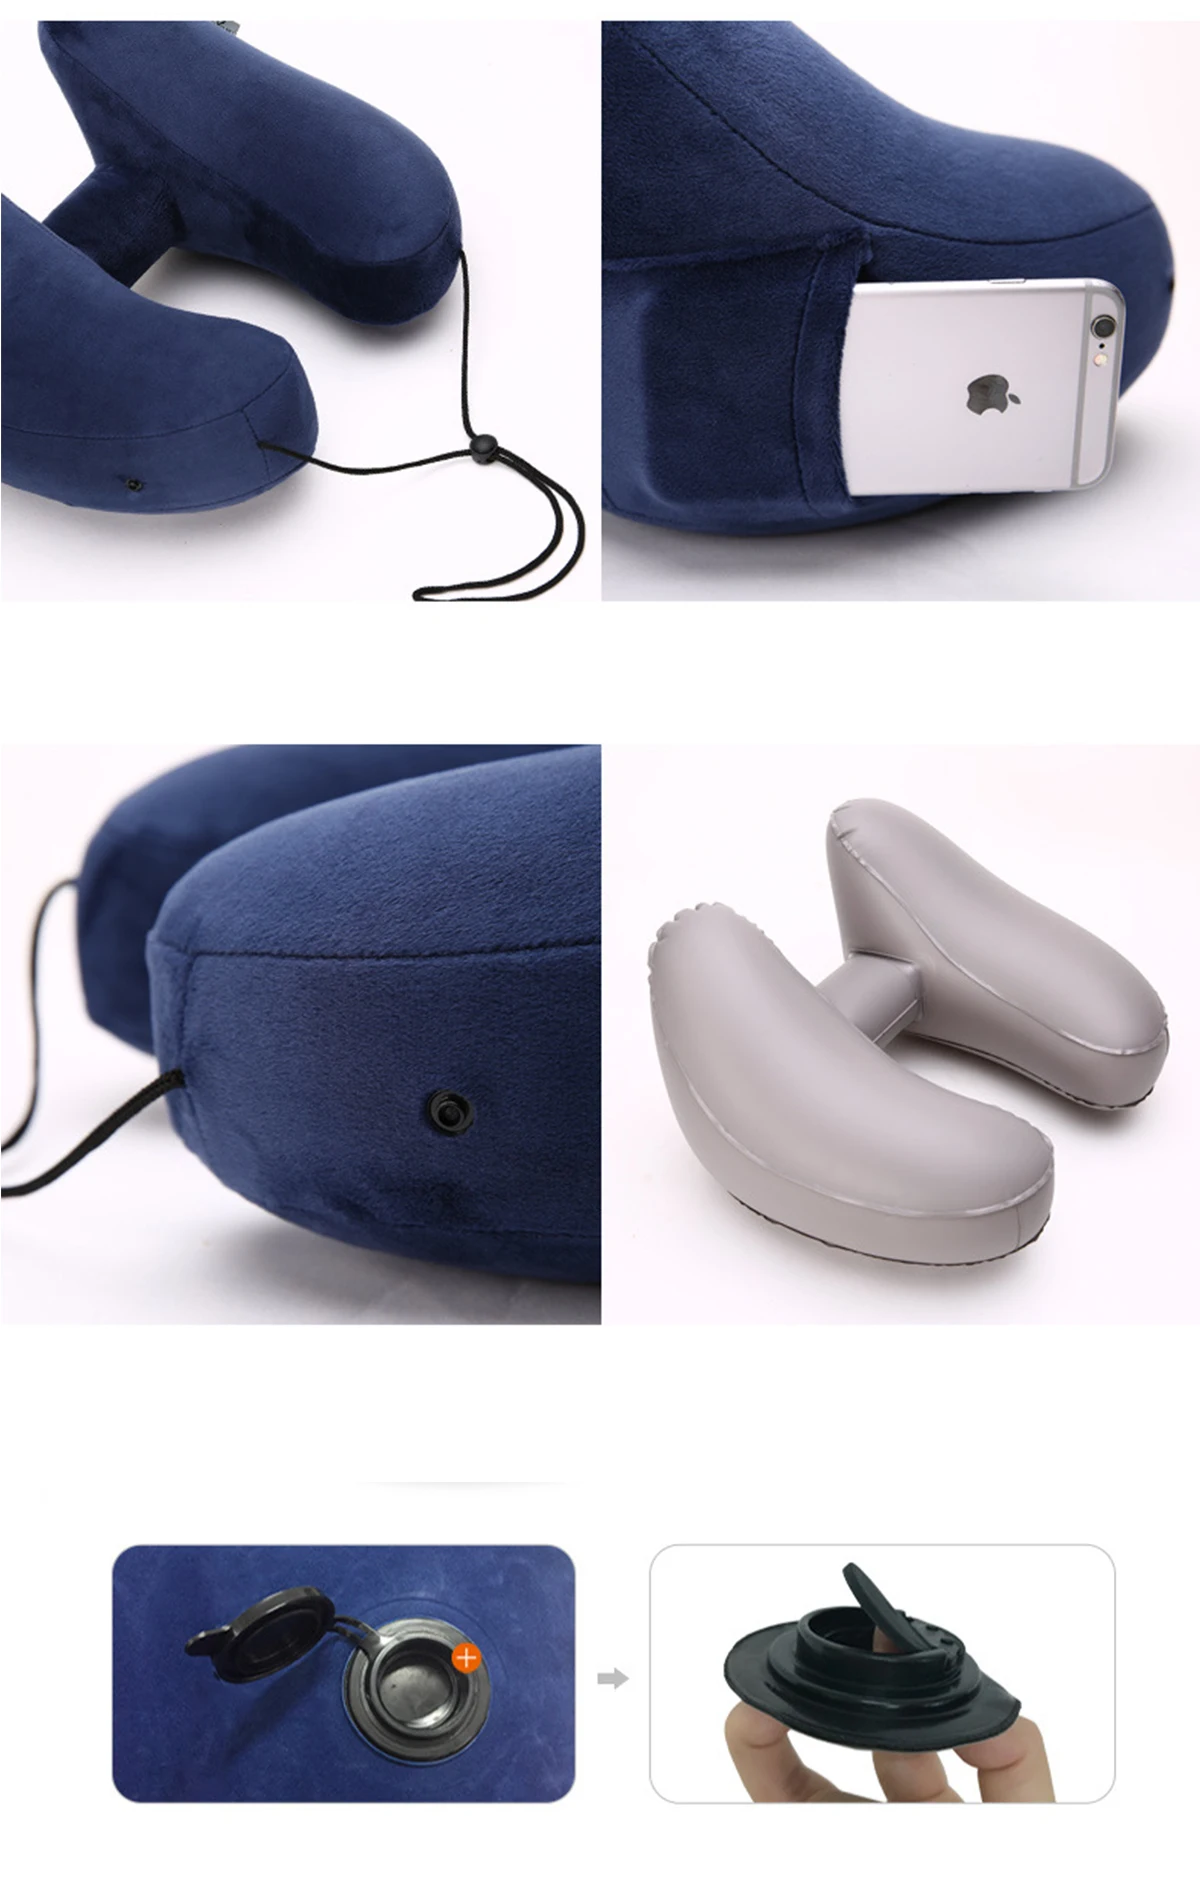 H-образная надувная подушка для путешествий, Складная легкая подушка для шеи с ворсом, автомобильное сиденье, Офисная Подушка для сна с самолетом